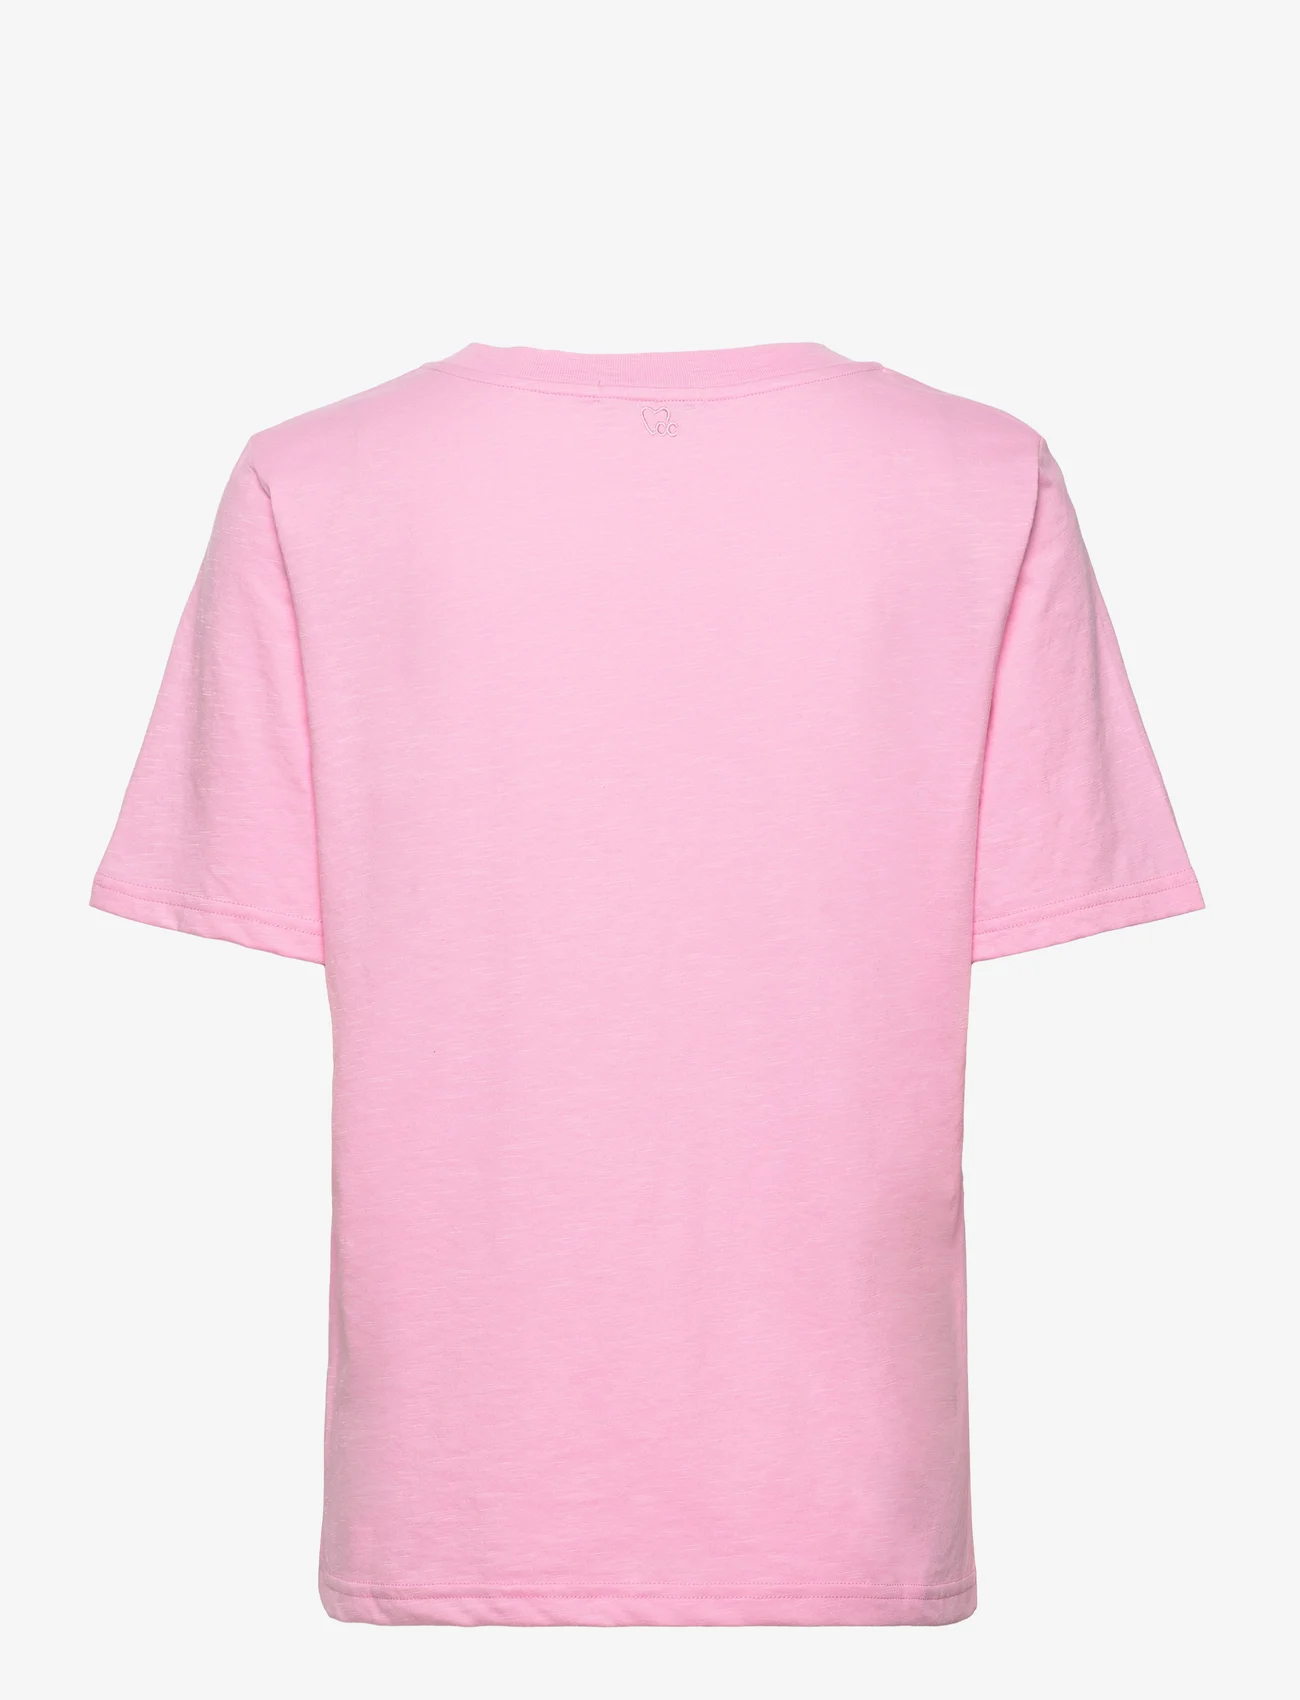 Coster Copenhagen - CC Heart regular t-shirt - zemākās cenas - baby pink - 1